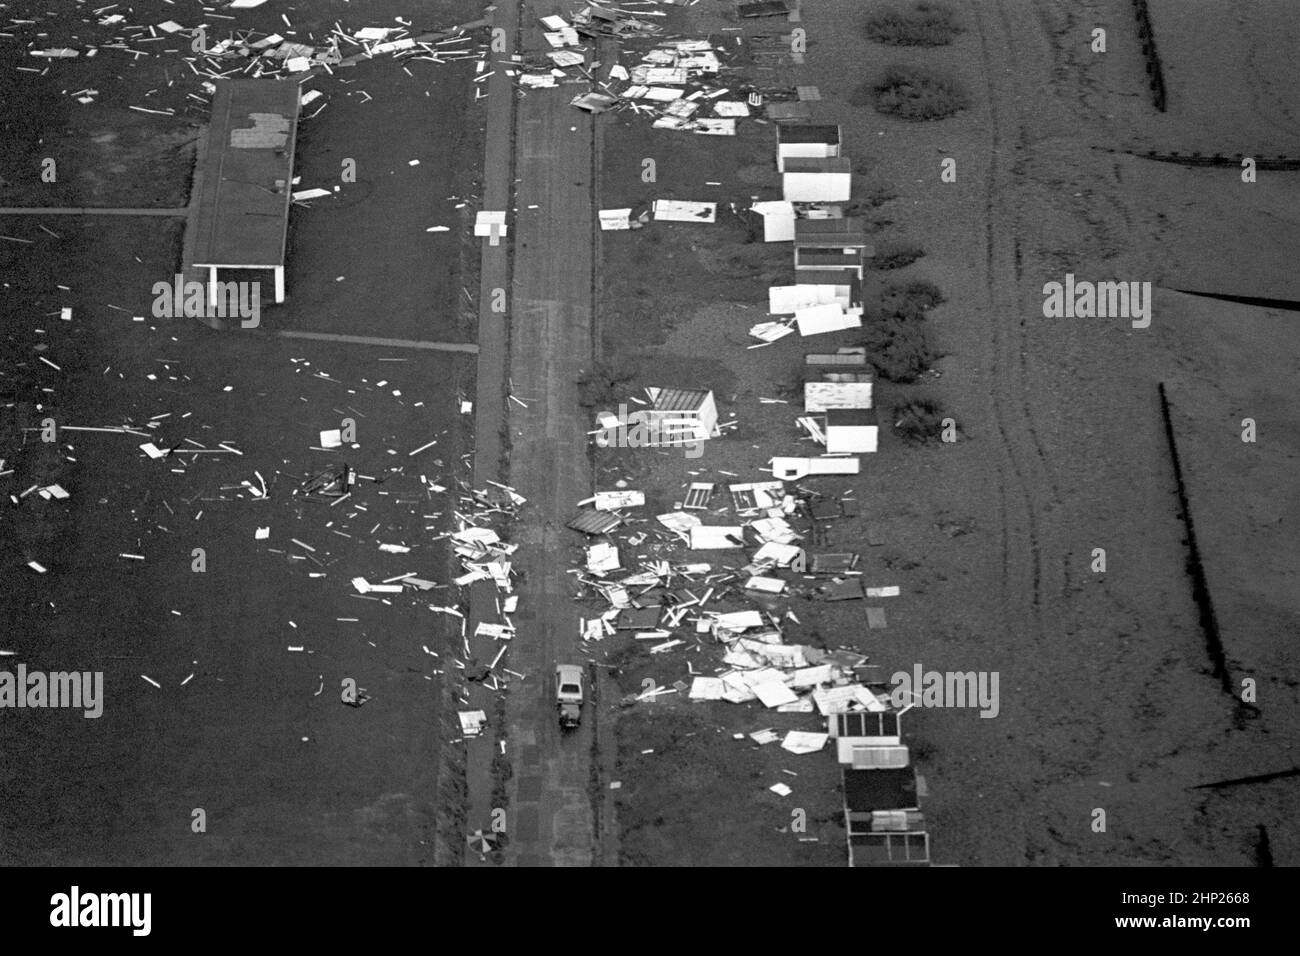 Photo de dossier datée du 16/10/1987 de huttes de plage parsemées à travers le front de mer de Shoreham après la grande tempête de 1987. Date de publication : vendredi 18 février 2022. Banque D'Images